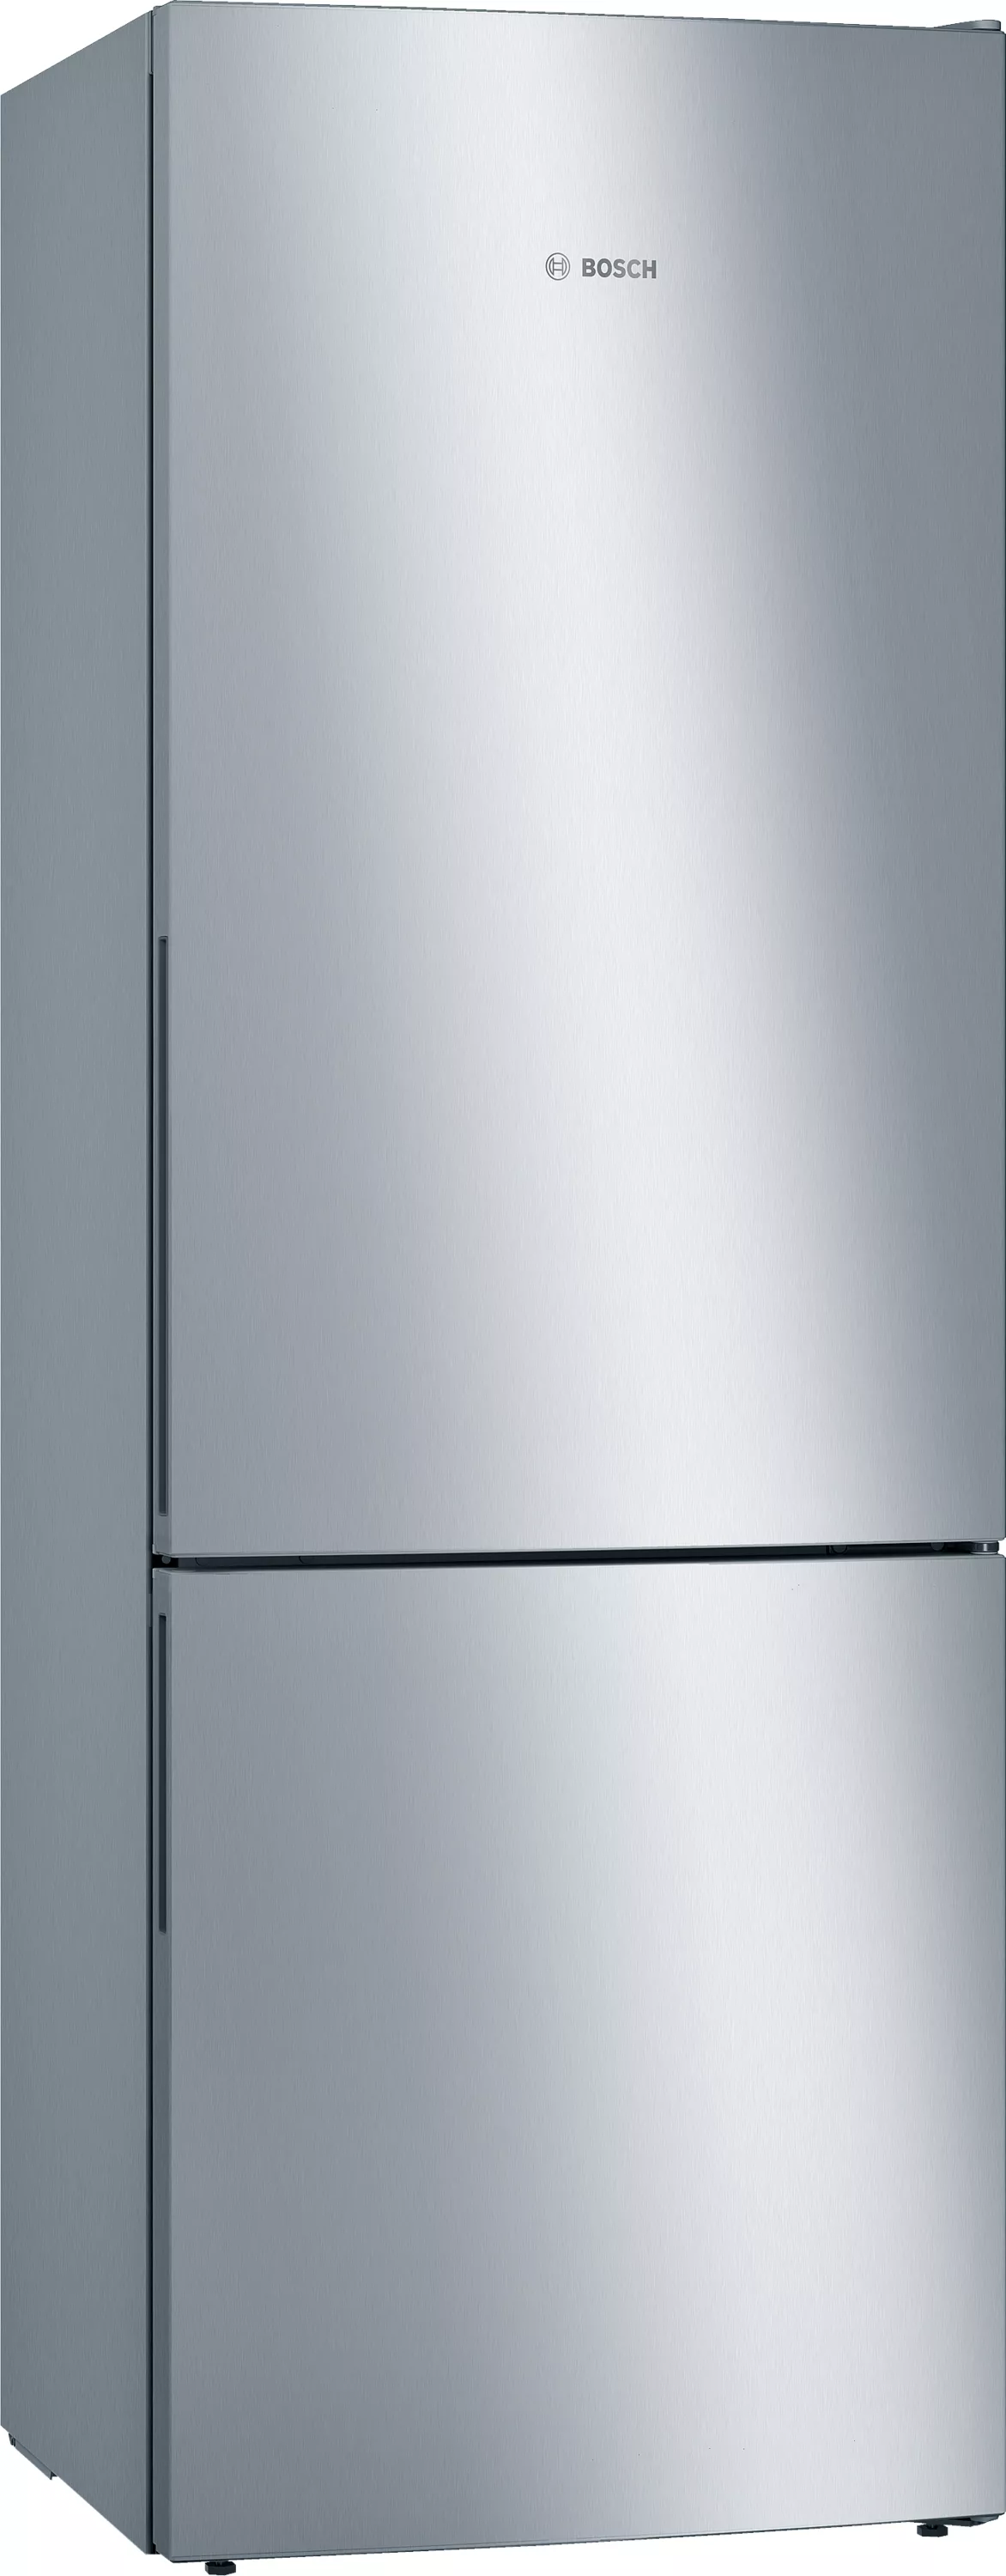 Bosch Serie 6, Freistehende Kühl-Gefrier-Kombination mit Gefrierbereich unten, 201 x 70 cm, Edelstahl (mit Antifingerprint), KGE49AICA